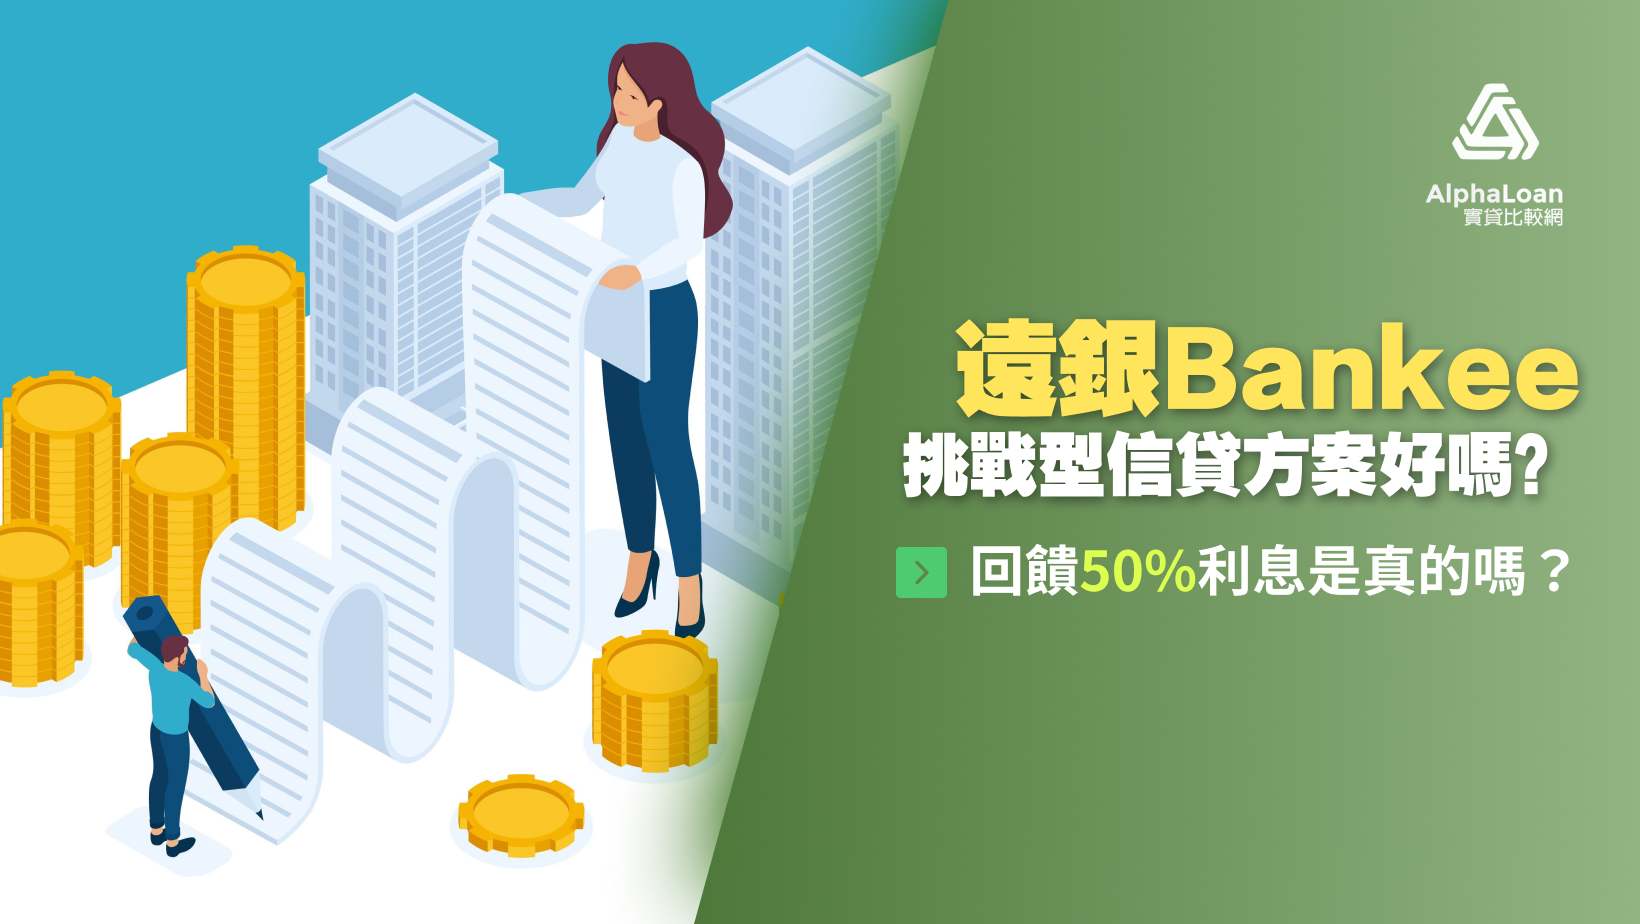 Bankee貸你存挑戰型信貸方案好嗎？回饋50%利息是真的嗎？1篇搞懂優缺點！